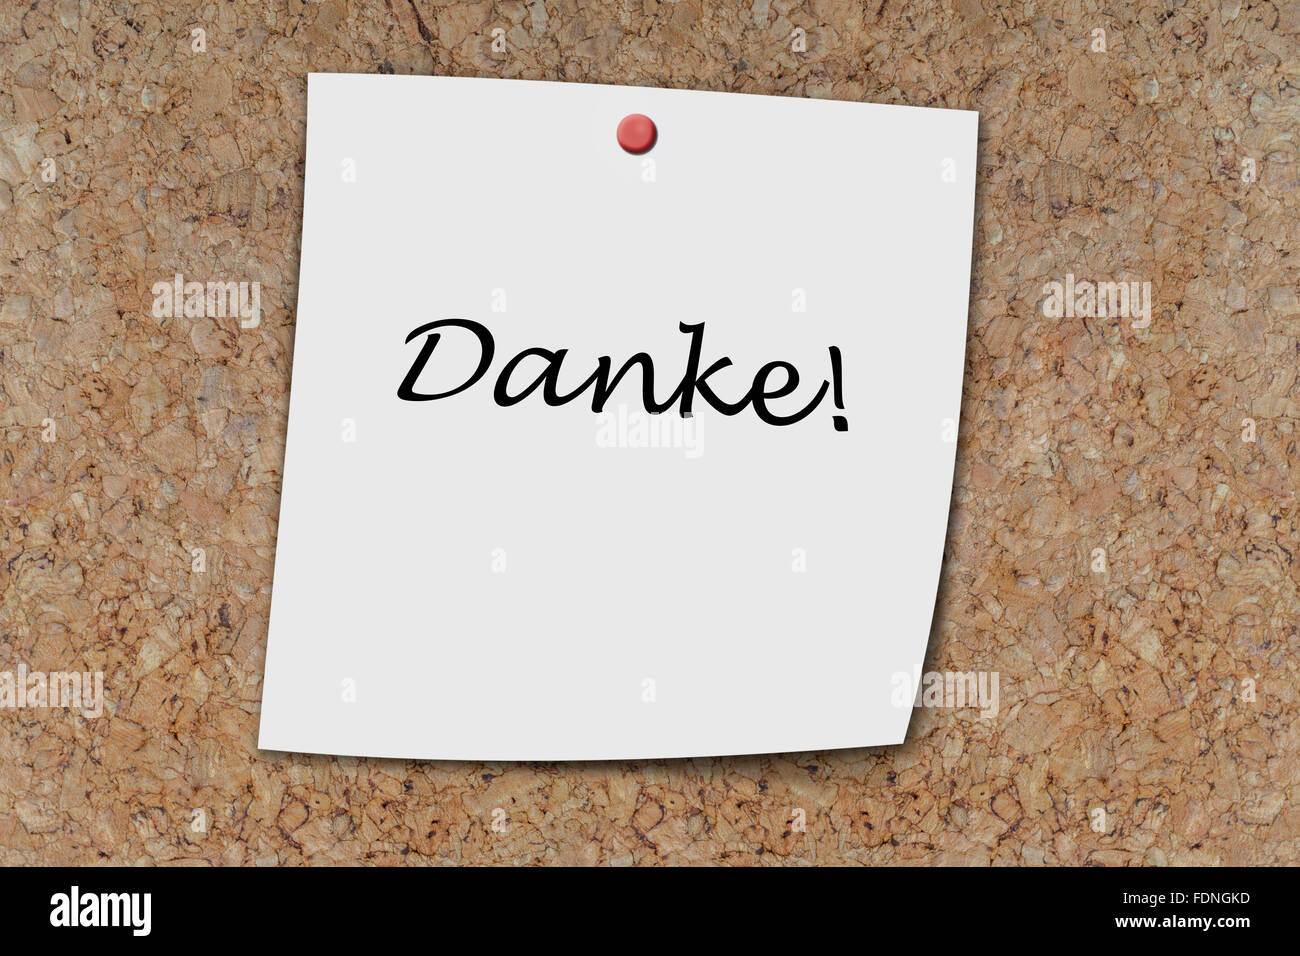 Danke (german Thank you) written on a memo pinned on cork board Stock Photo